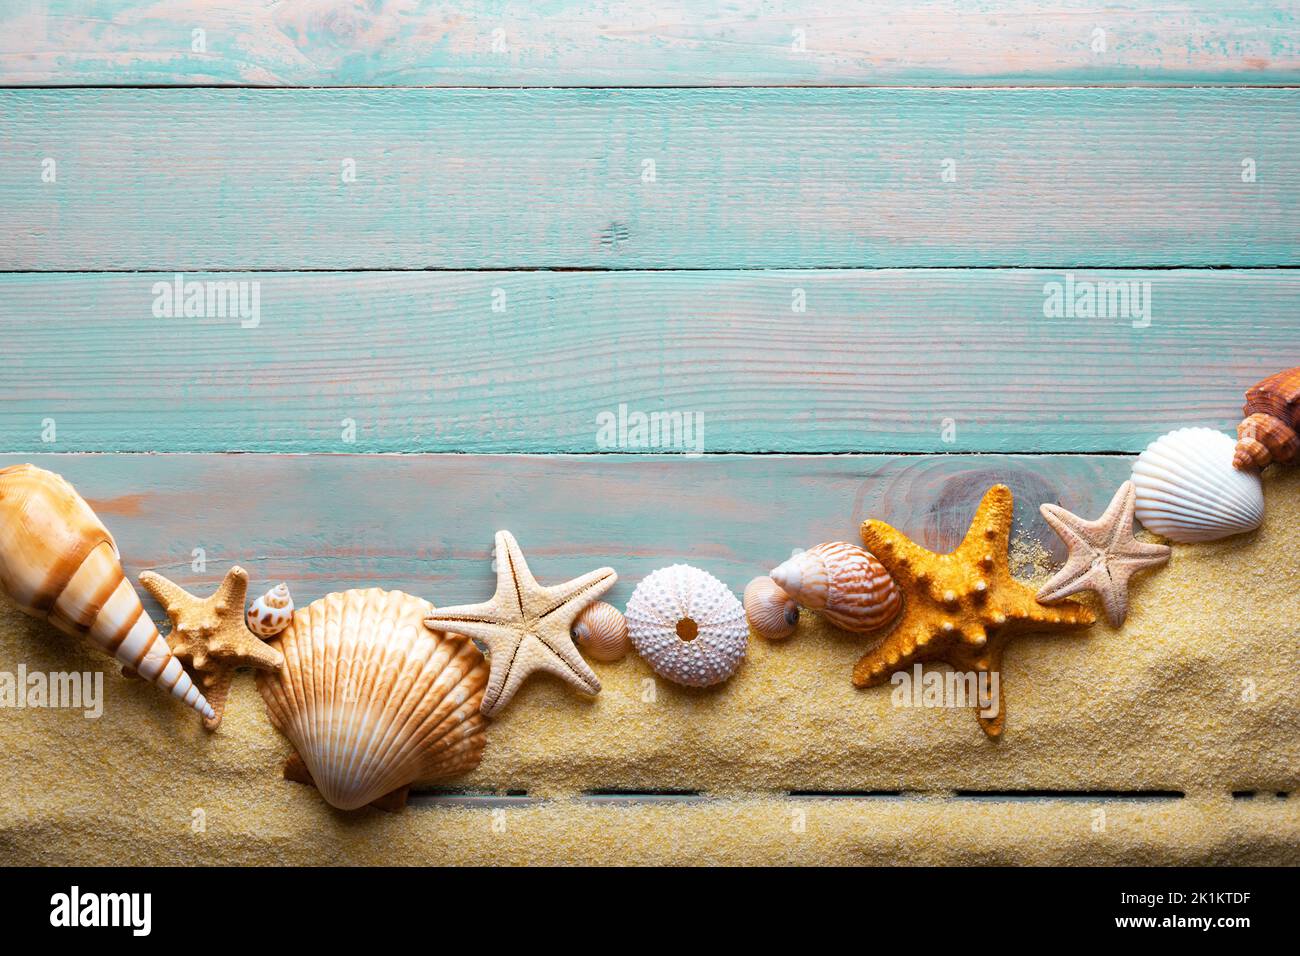 Concept vacances et temps d'été avec étoiles de mer et coquillages sur une table en bois turquoise avec sable Banque D'Images